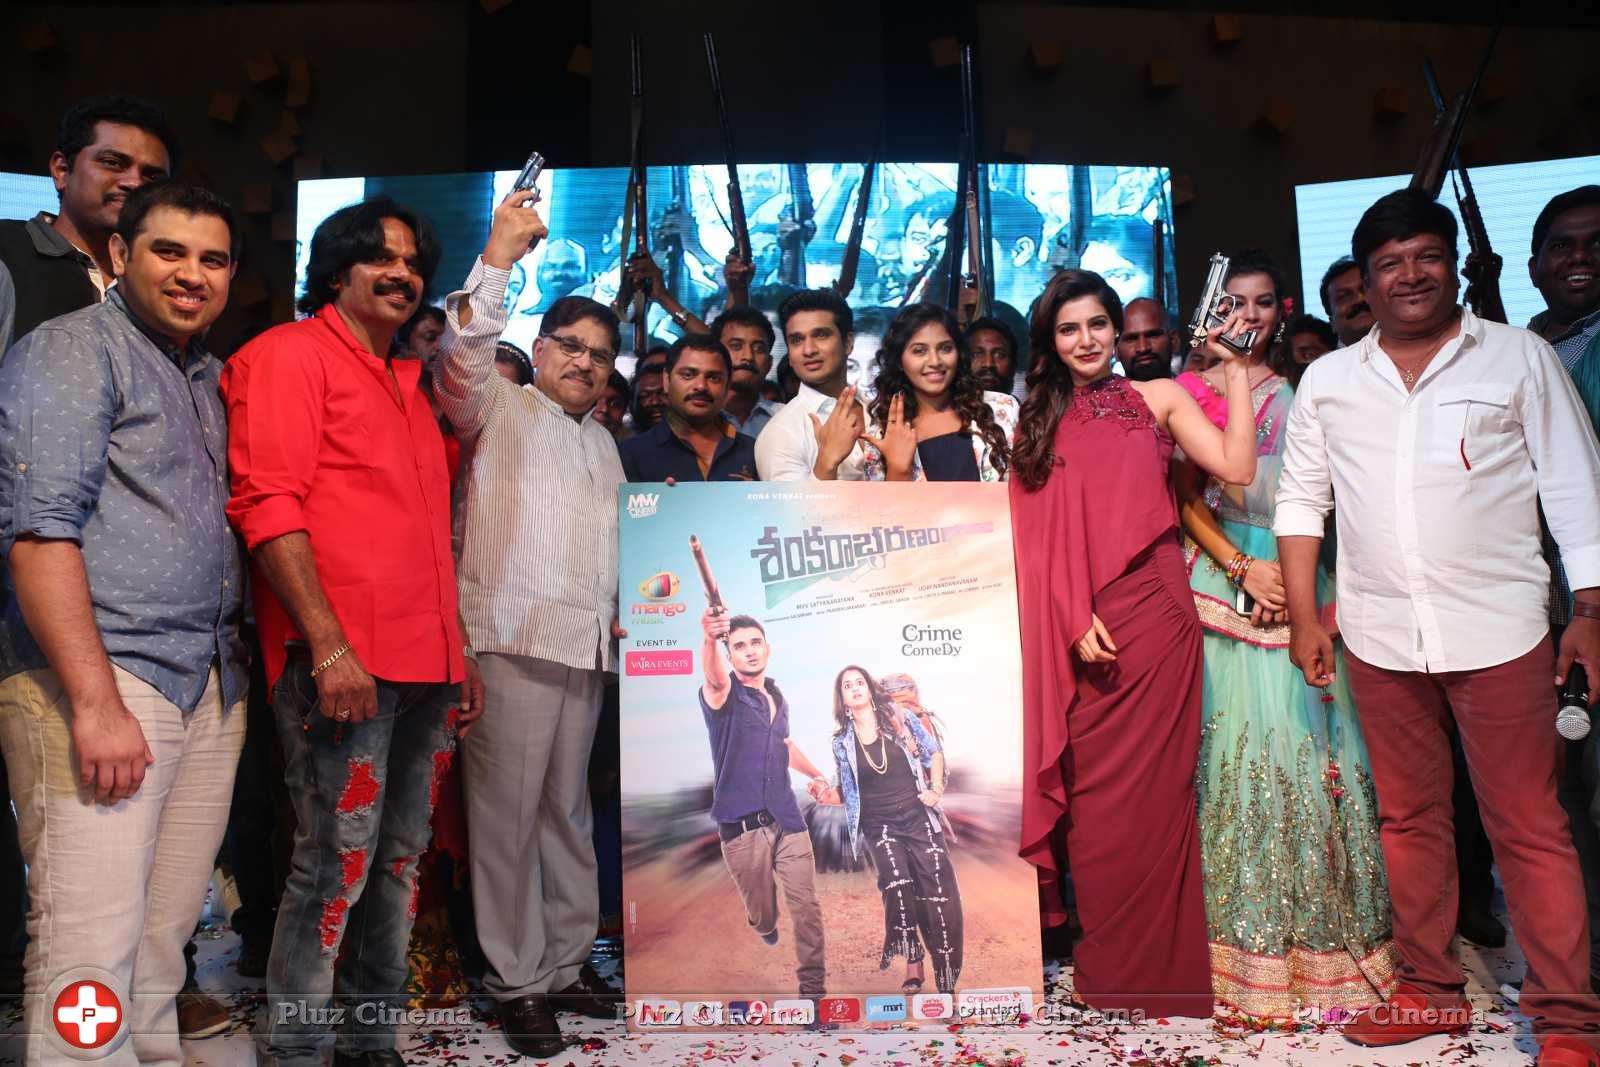 Sankarabharanam Movie Audio Launch Stills | Picture 1149545